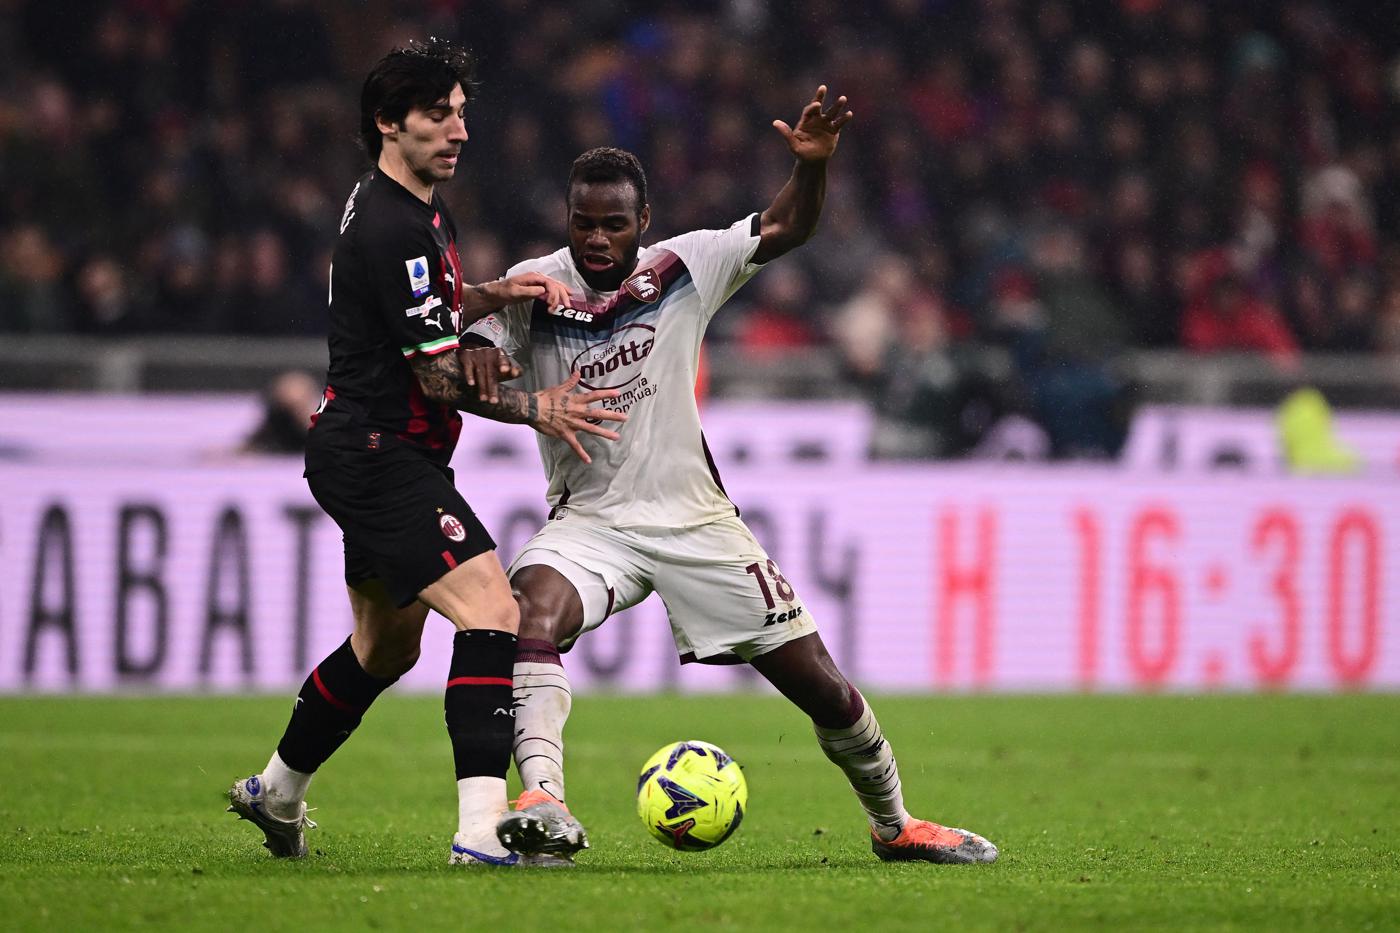 AC Mailand gegen Salernitana - 1-1. Italienische Meisterschaft, Runde 26. Spielbericht, Statistik.